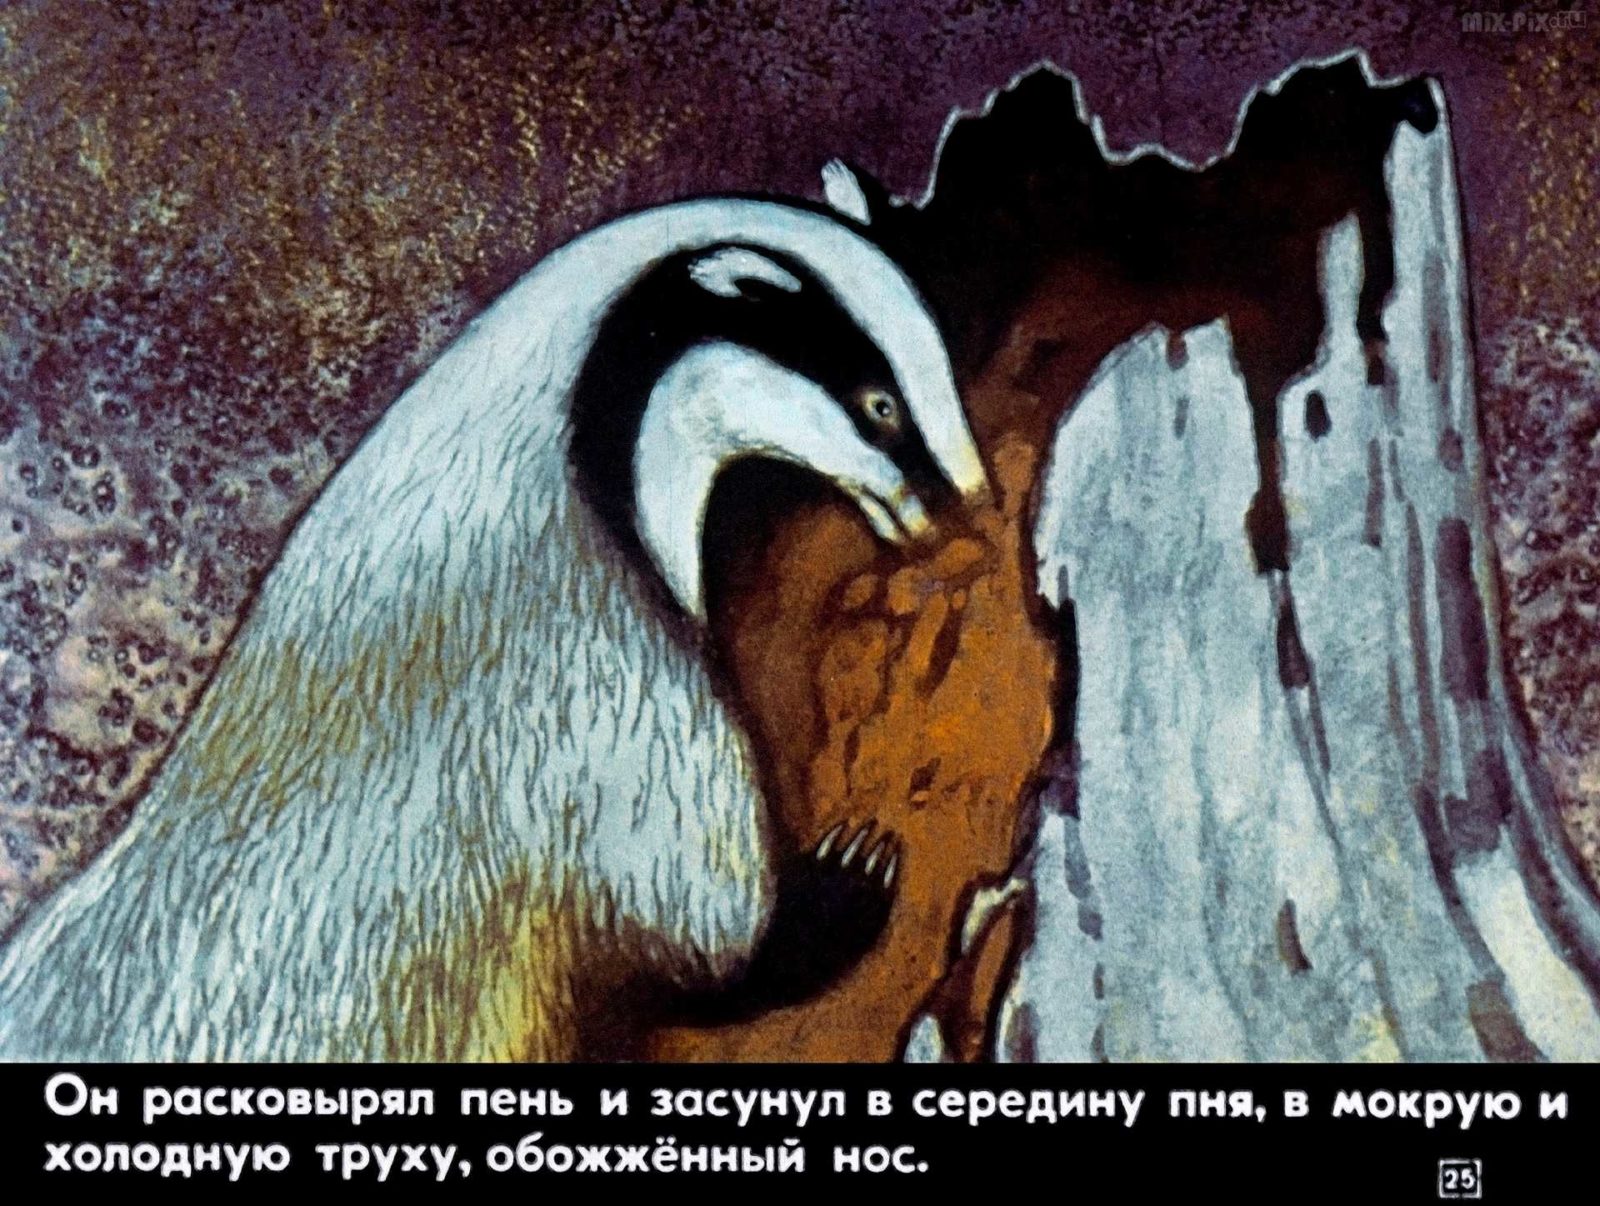 Иллюстрация к рассказу барсучий нос Паустовский. К. Паустовский "барсучий нос".